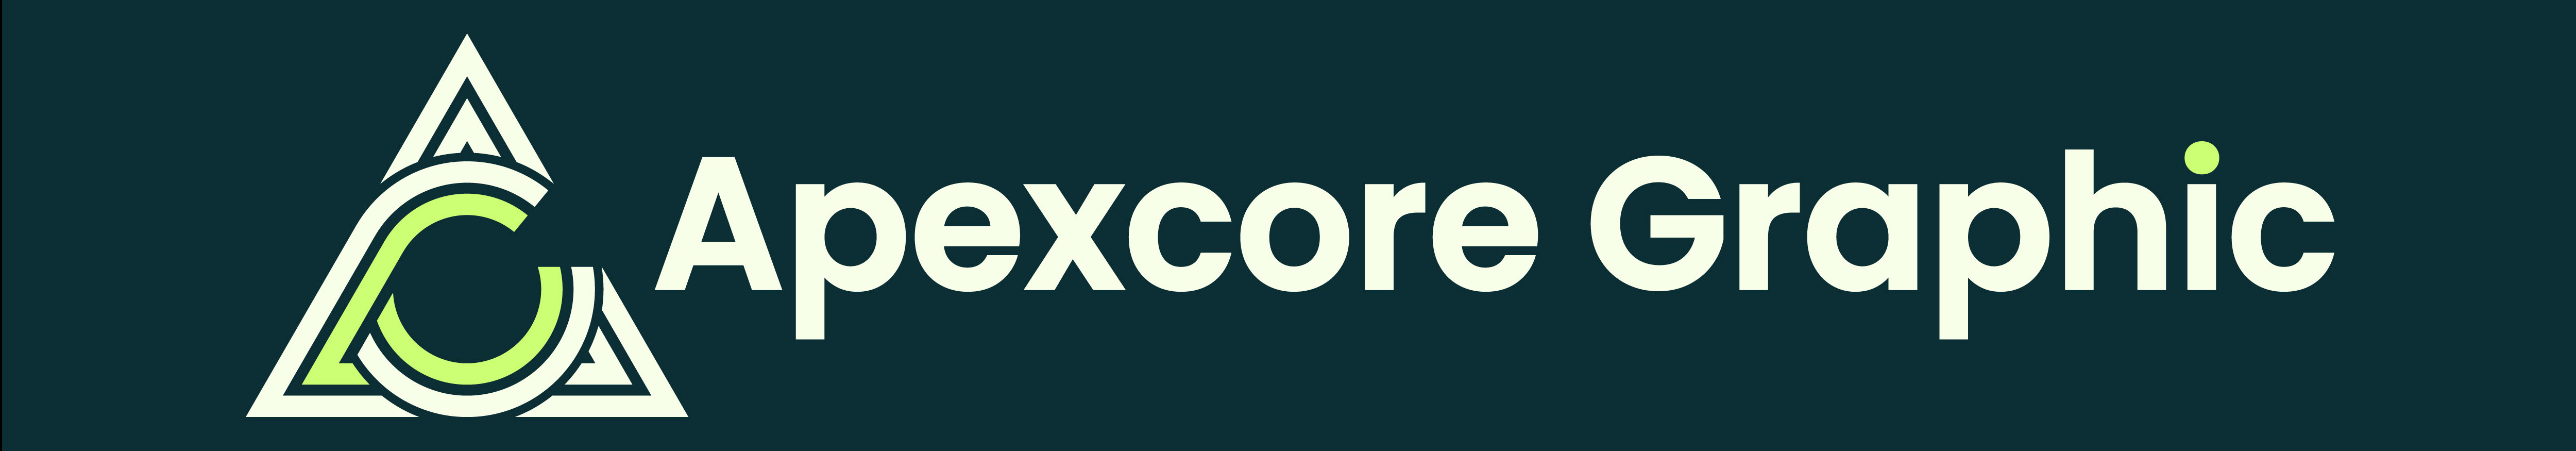 Apexcore Graphic's profile banner